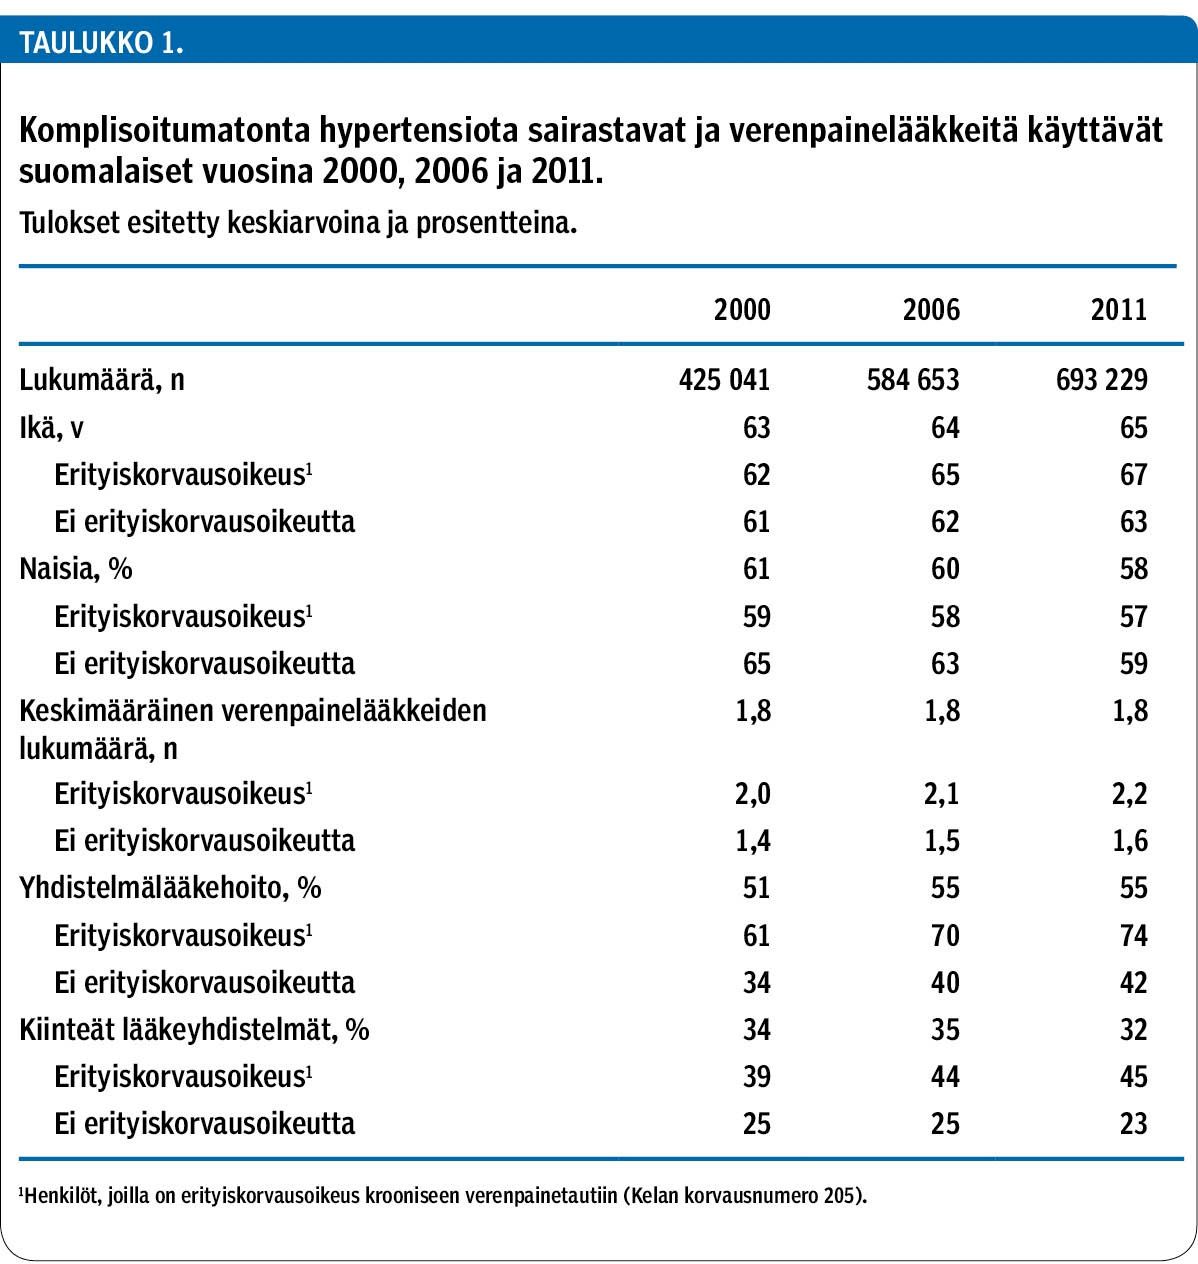 Komplisoitumatonta hypertensiota sairastavat ja verenpainelääkkeitä käyttävät suomalaiset vuosina 2000, 2006 ja 2011.